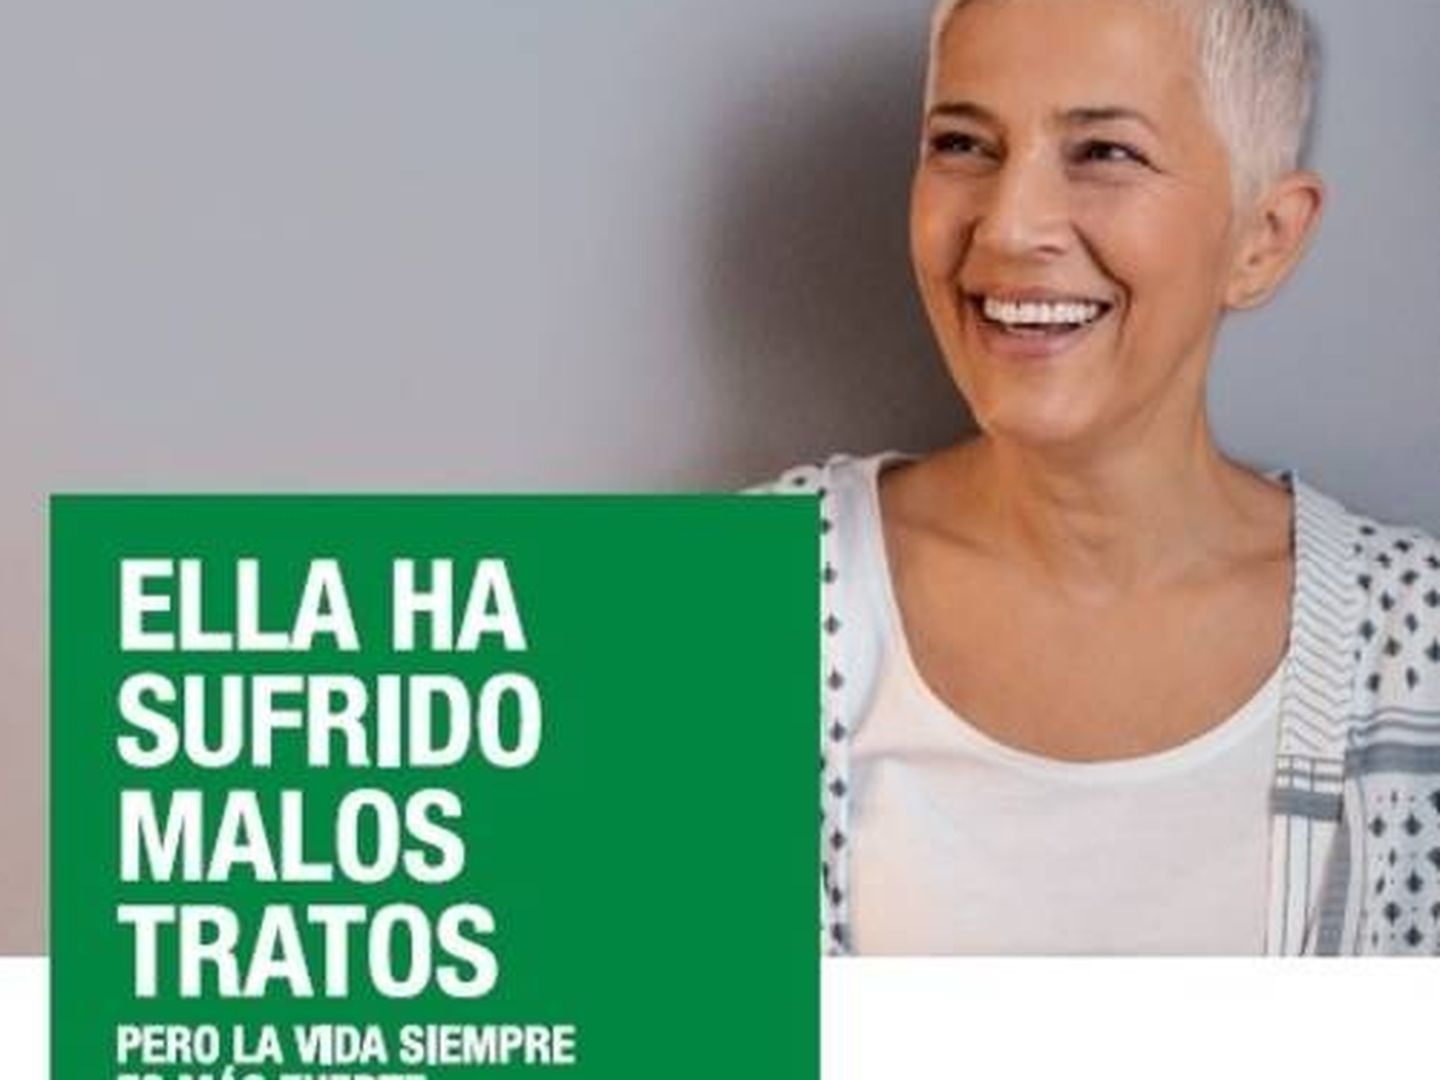 Campaña de la Junta de Andalucía, que usa una imagen de una modelo extranjera.